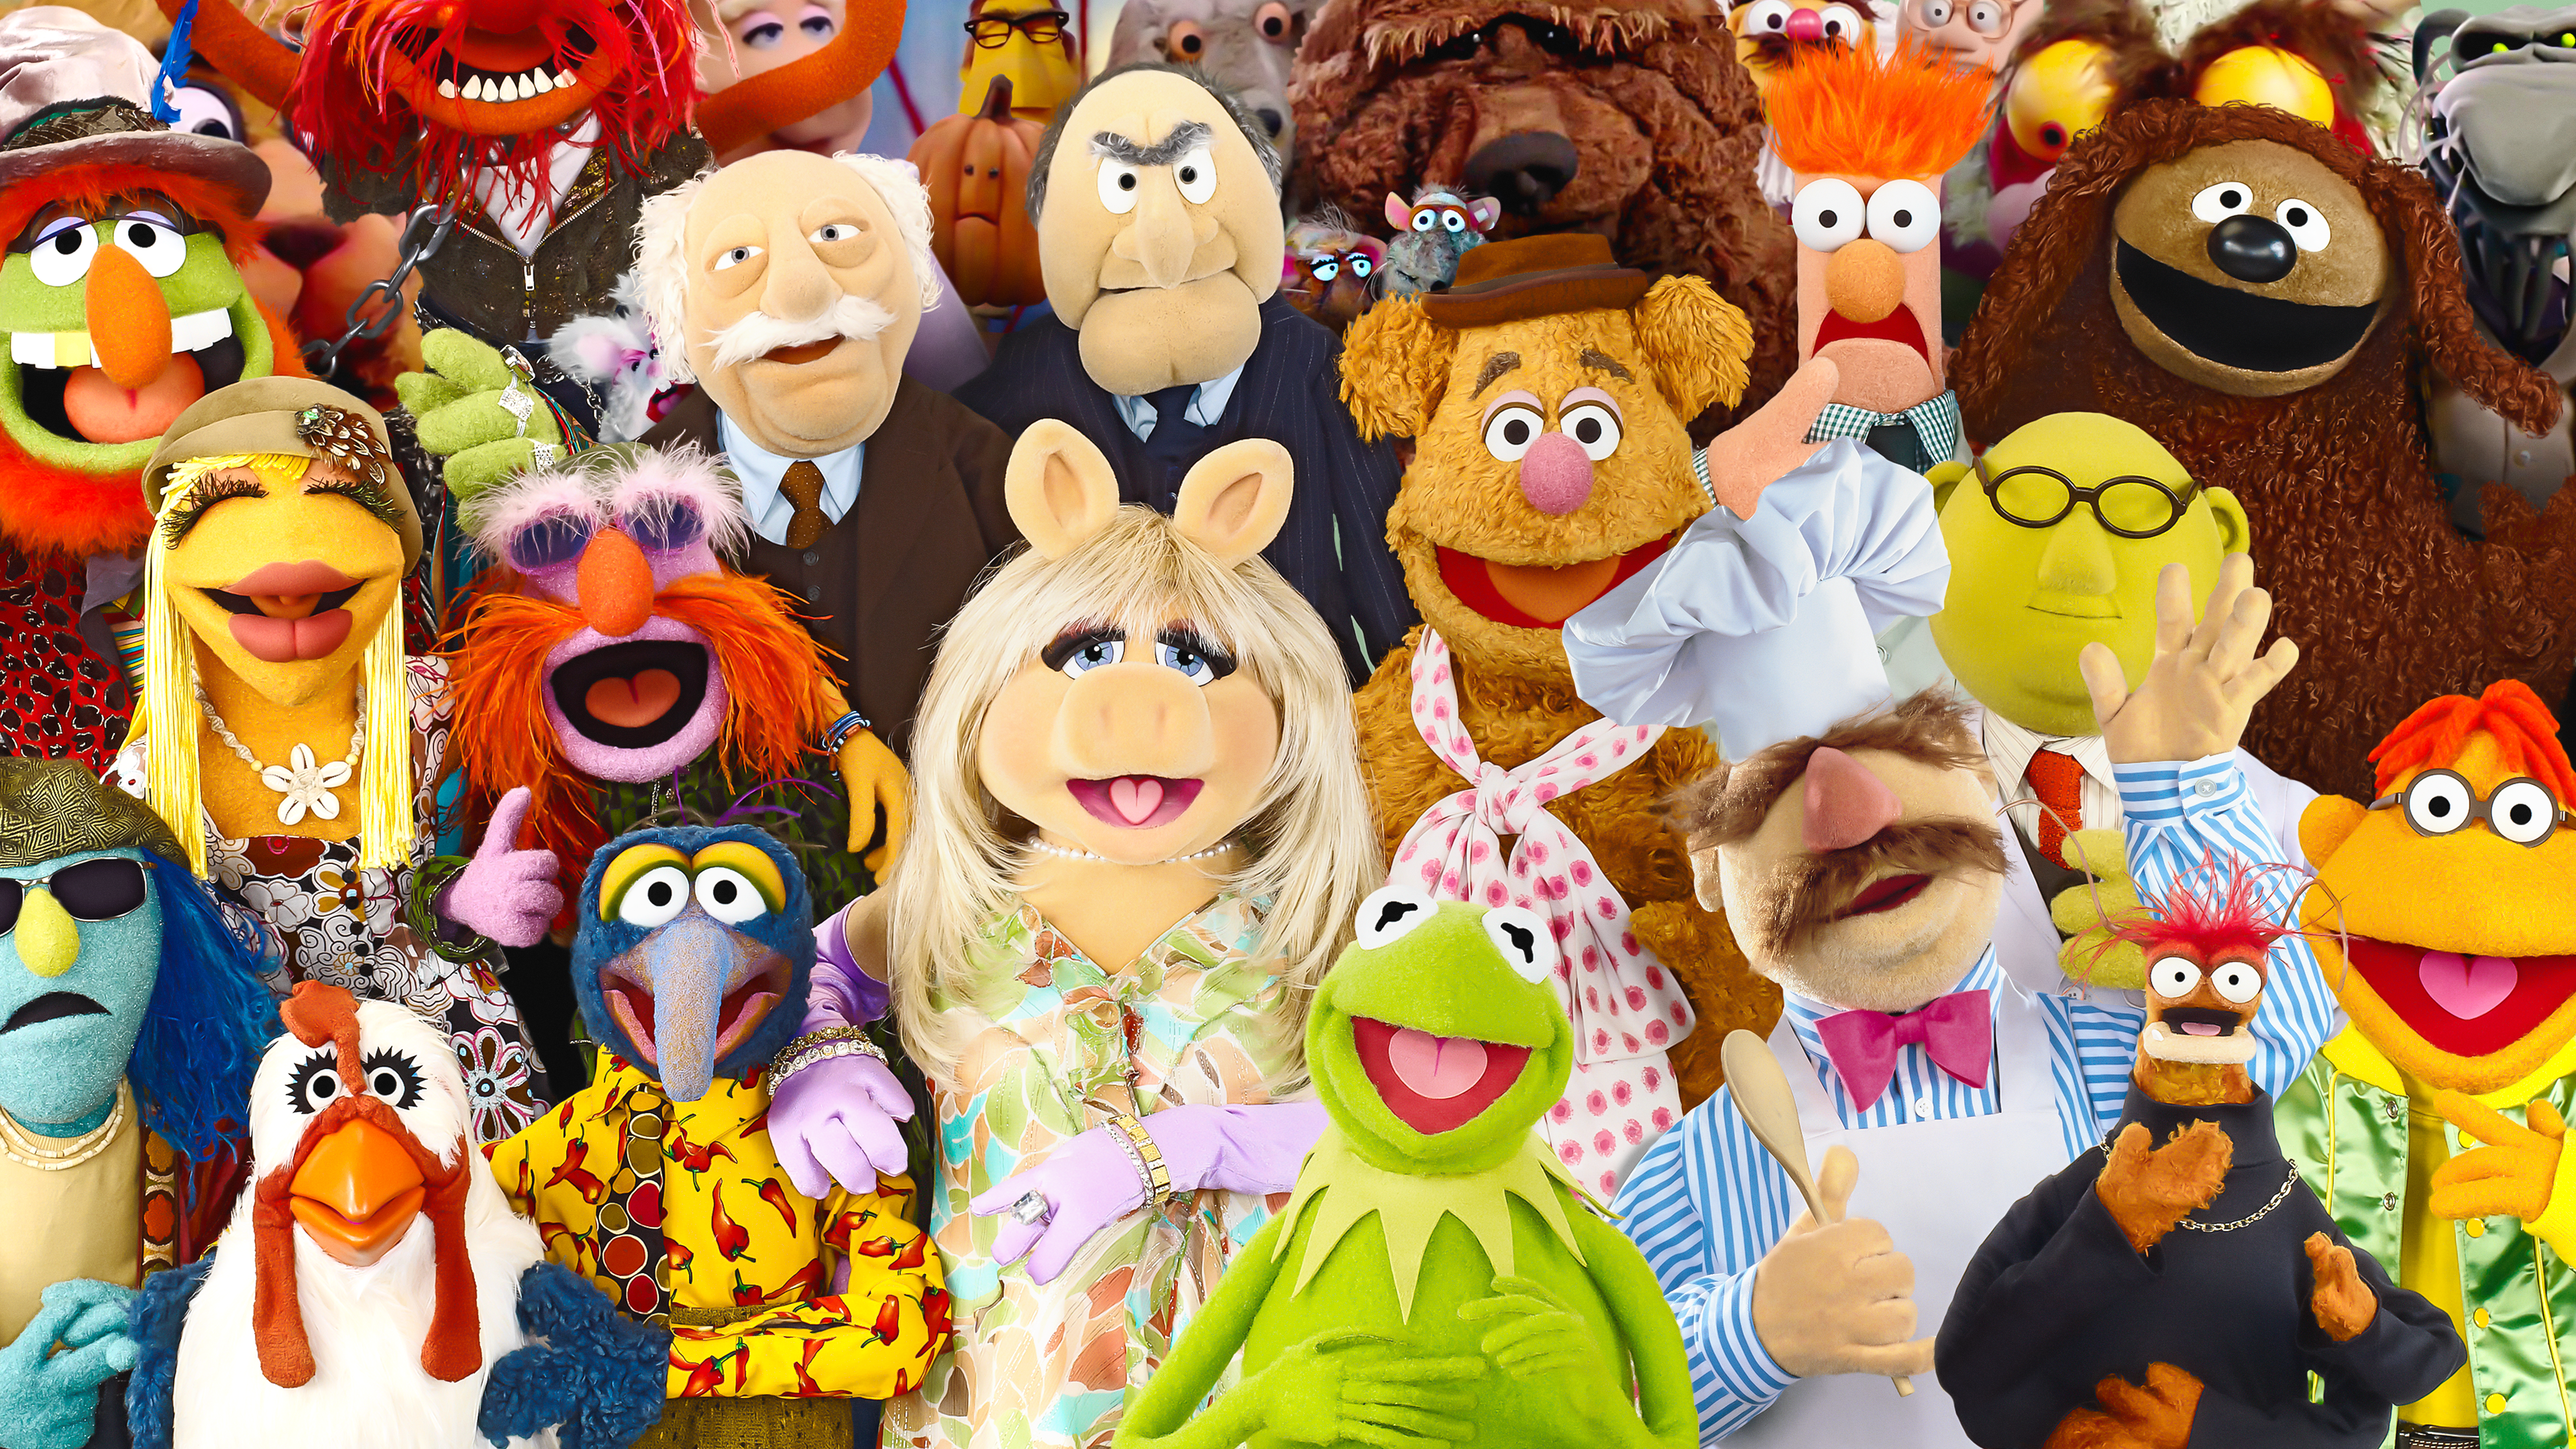 Le Nouveau Muppet Show